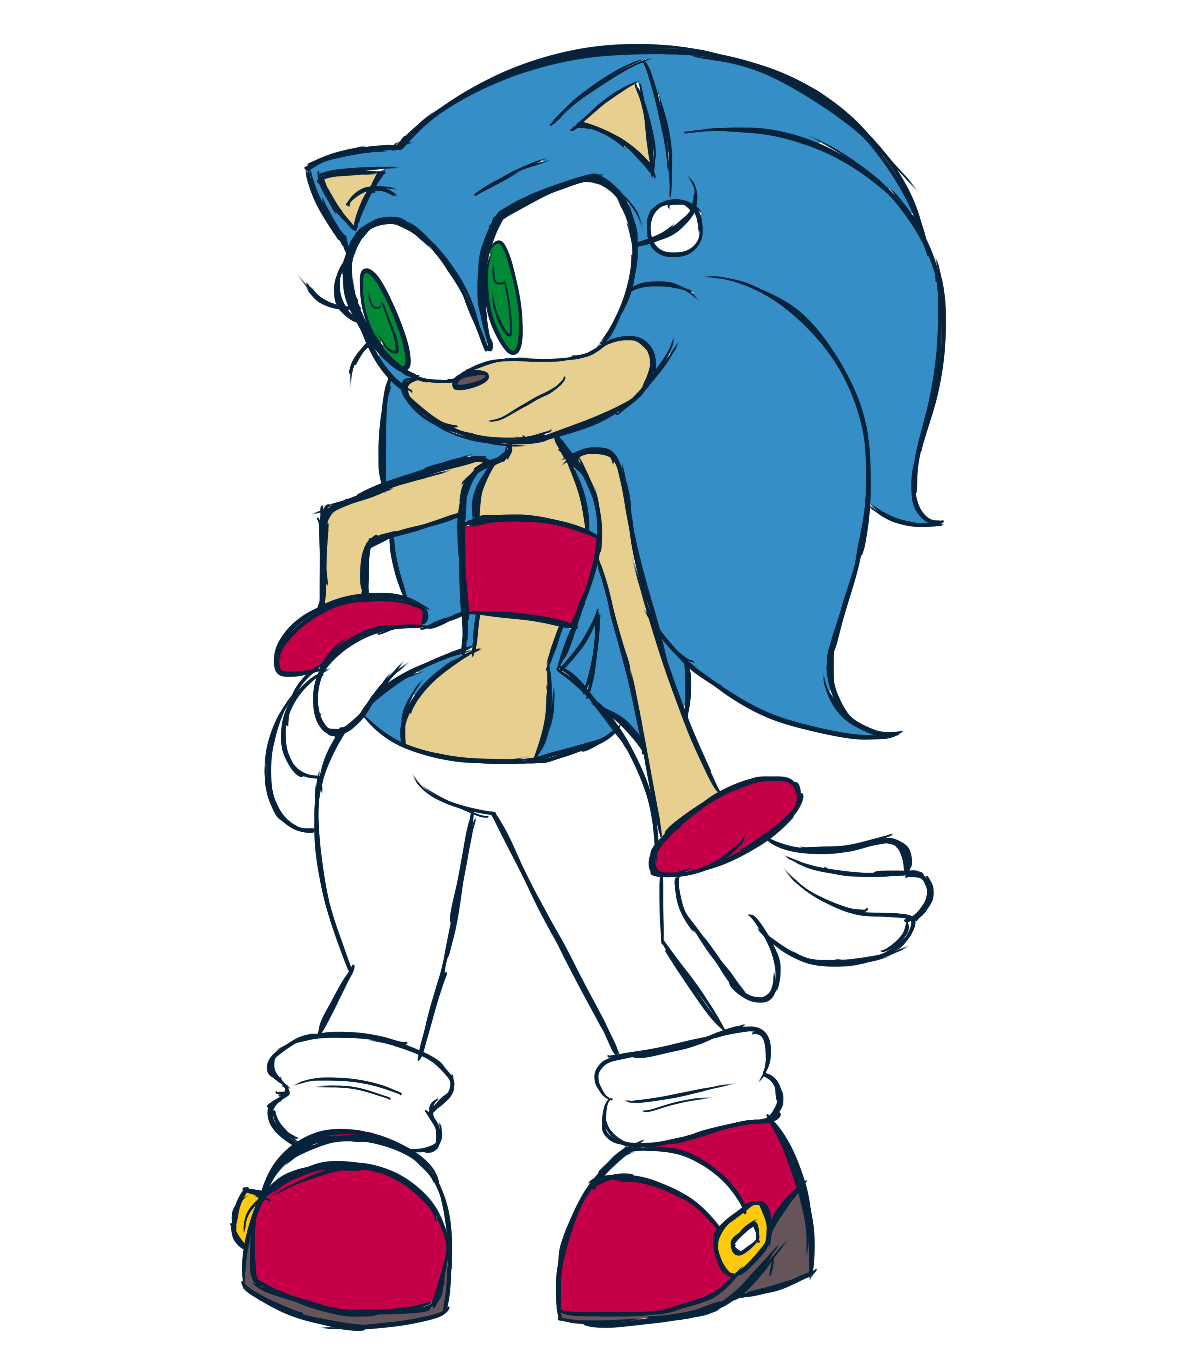 Соник r63. Sonic the Hedgehog r63. Sonic 63. Соник r63 арт.